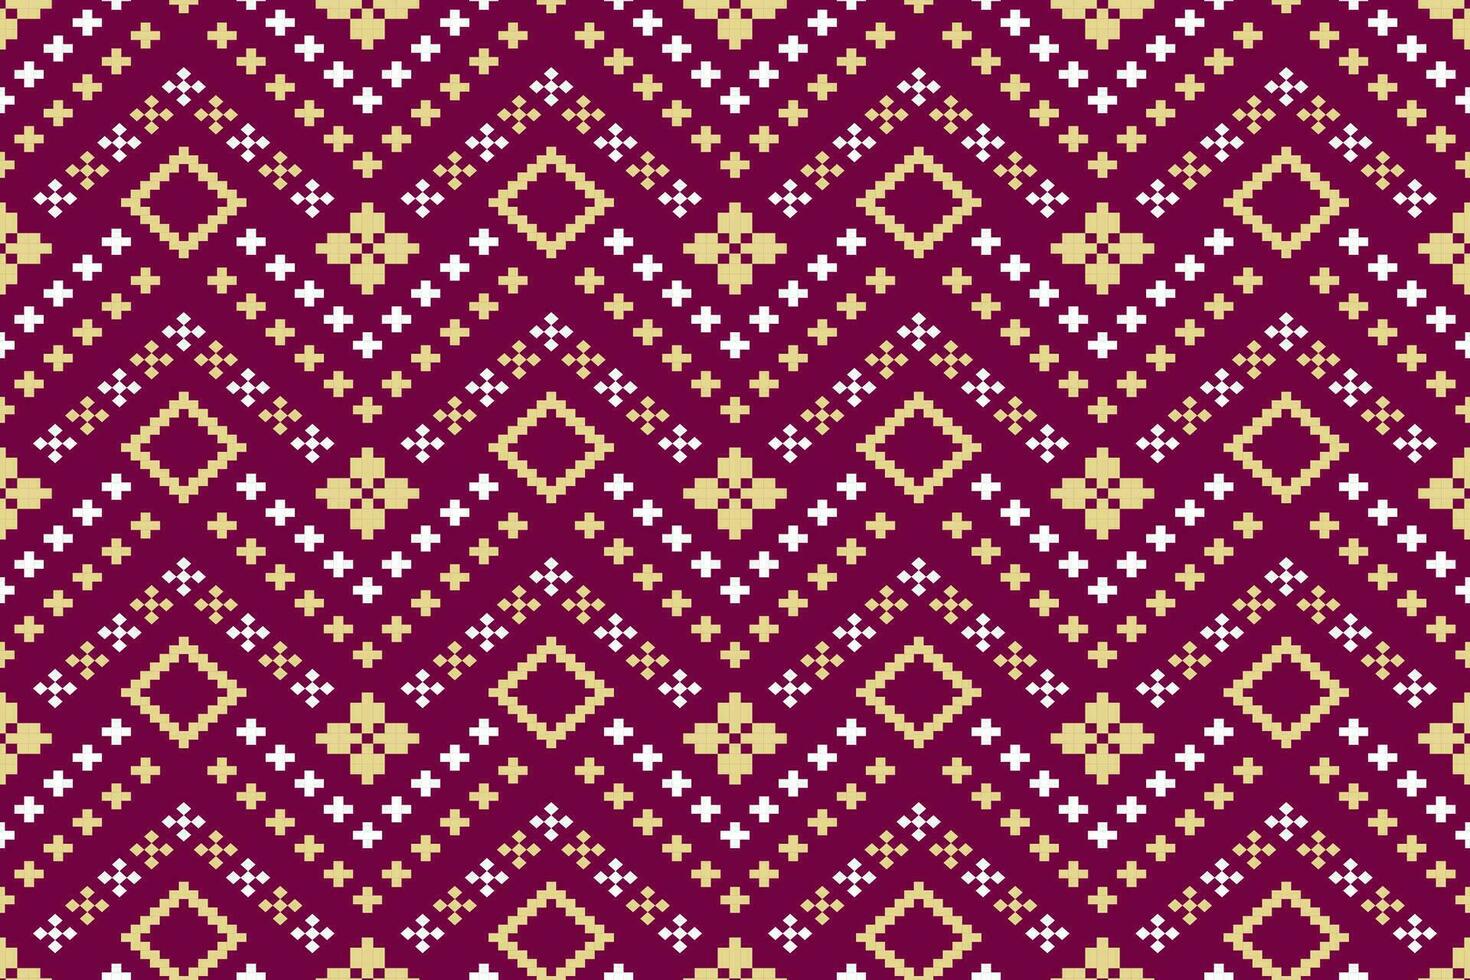 roze kruis steek kleurrijk meetkundig traditioneel etnisch patroon ikat naadloos patroon grens abstract ontwerp voor kleding stof afdrukken kleding jurk tapijt gordijnen en sarong aztec Afrikaanse Indisch Indonesisch vector